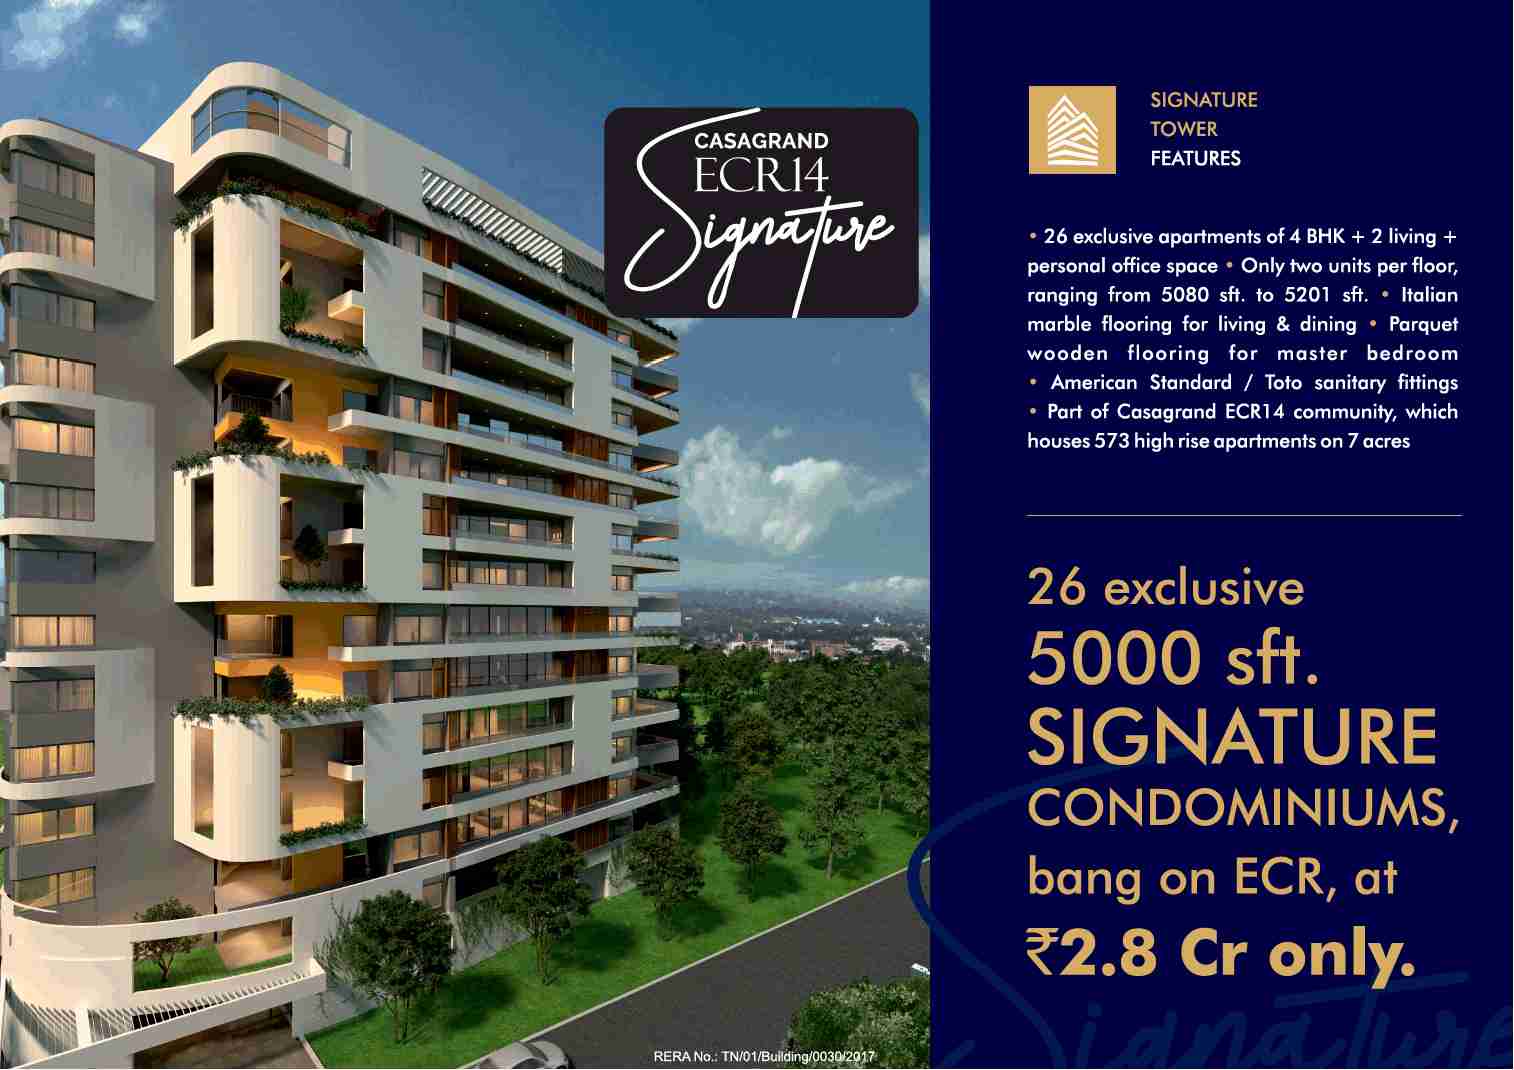 Book exclusive signature condominiums at Casagrand ECR 14 in Chennai